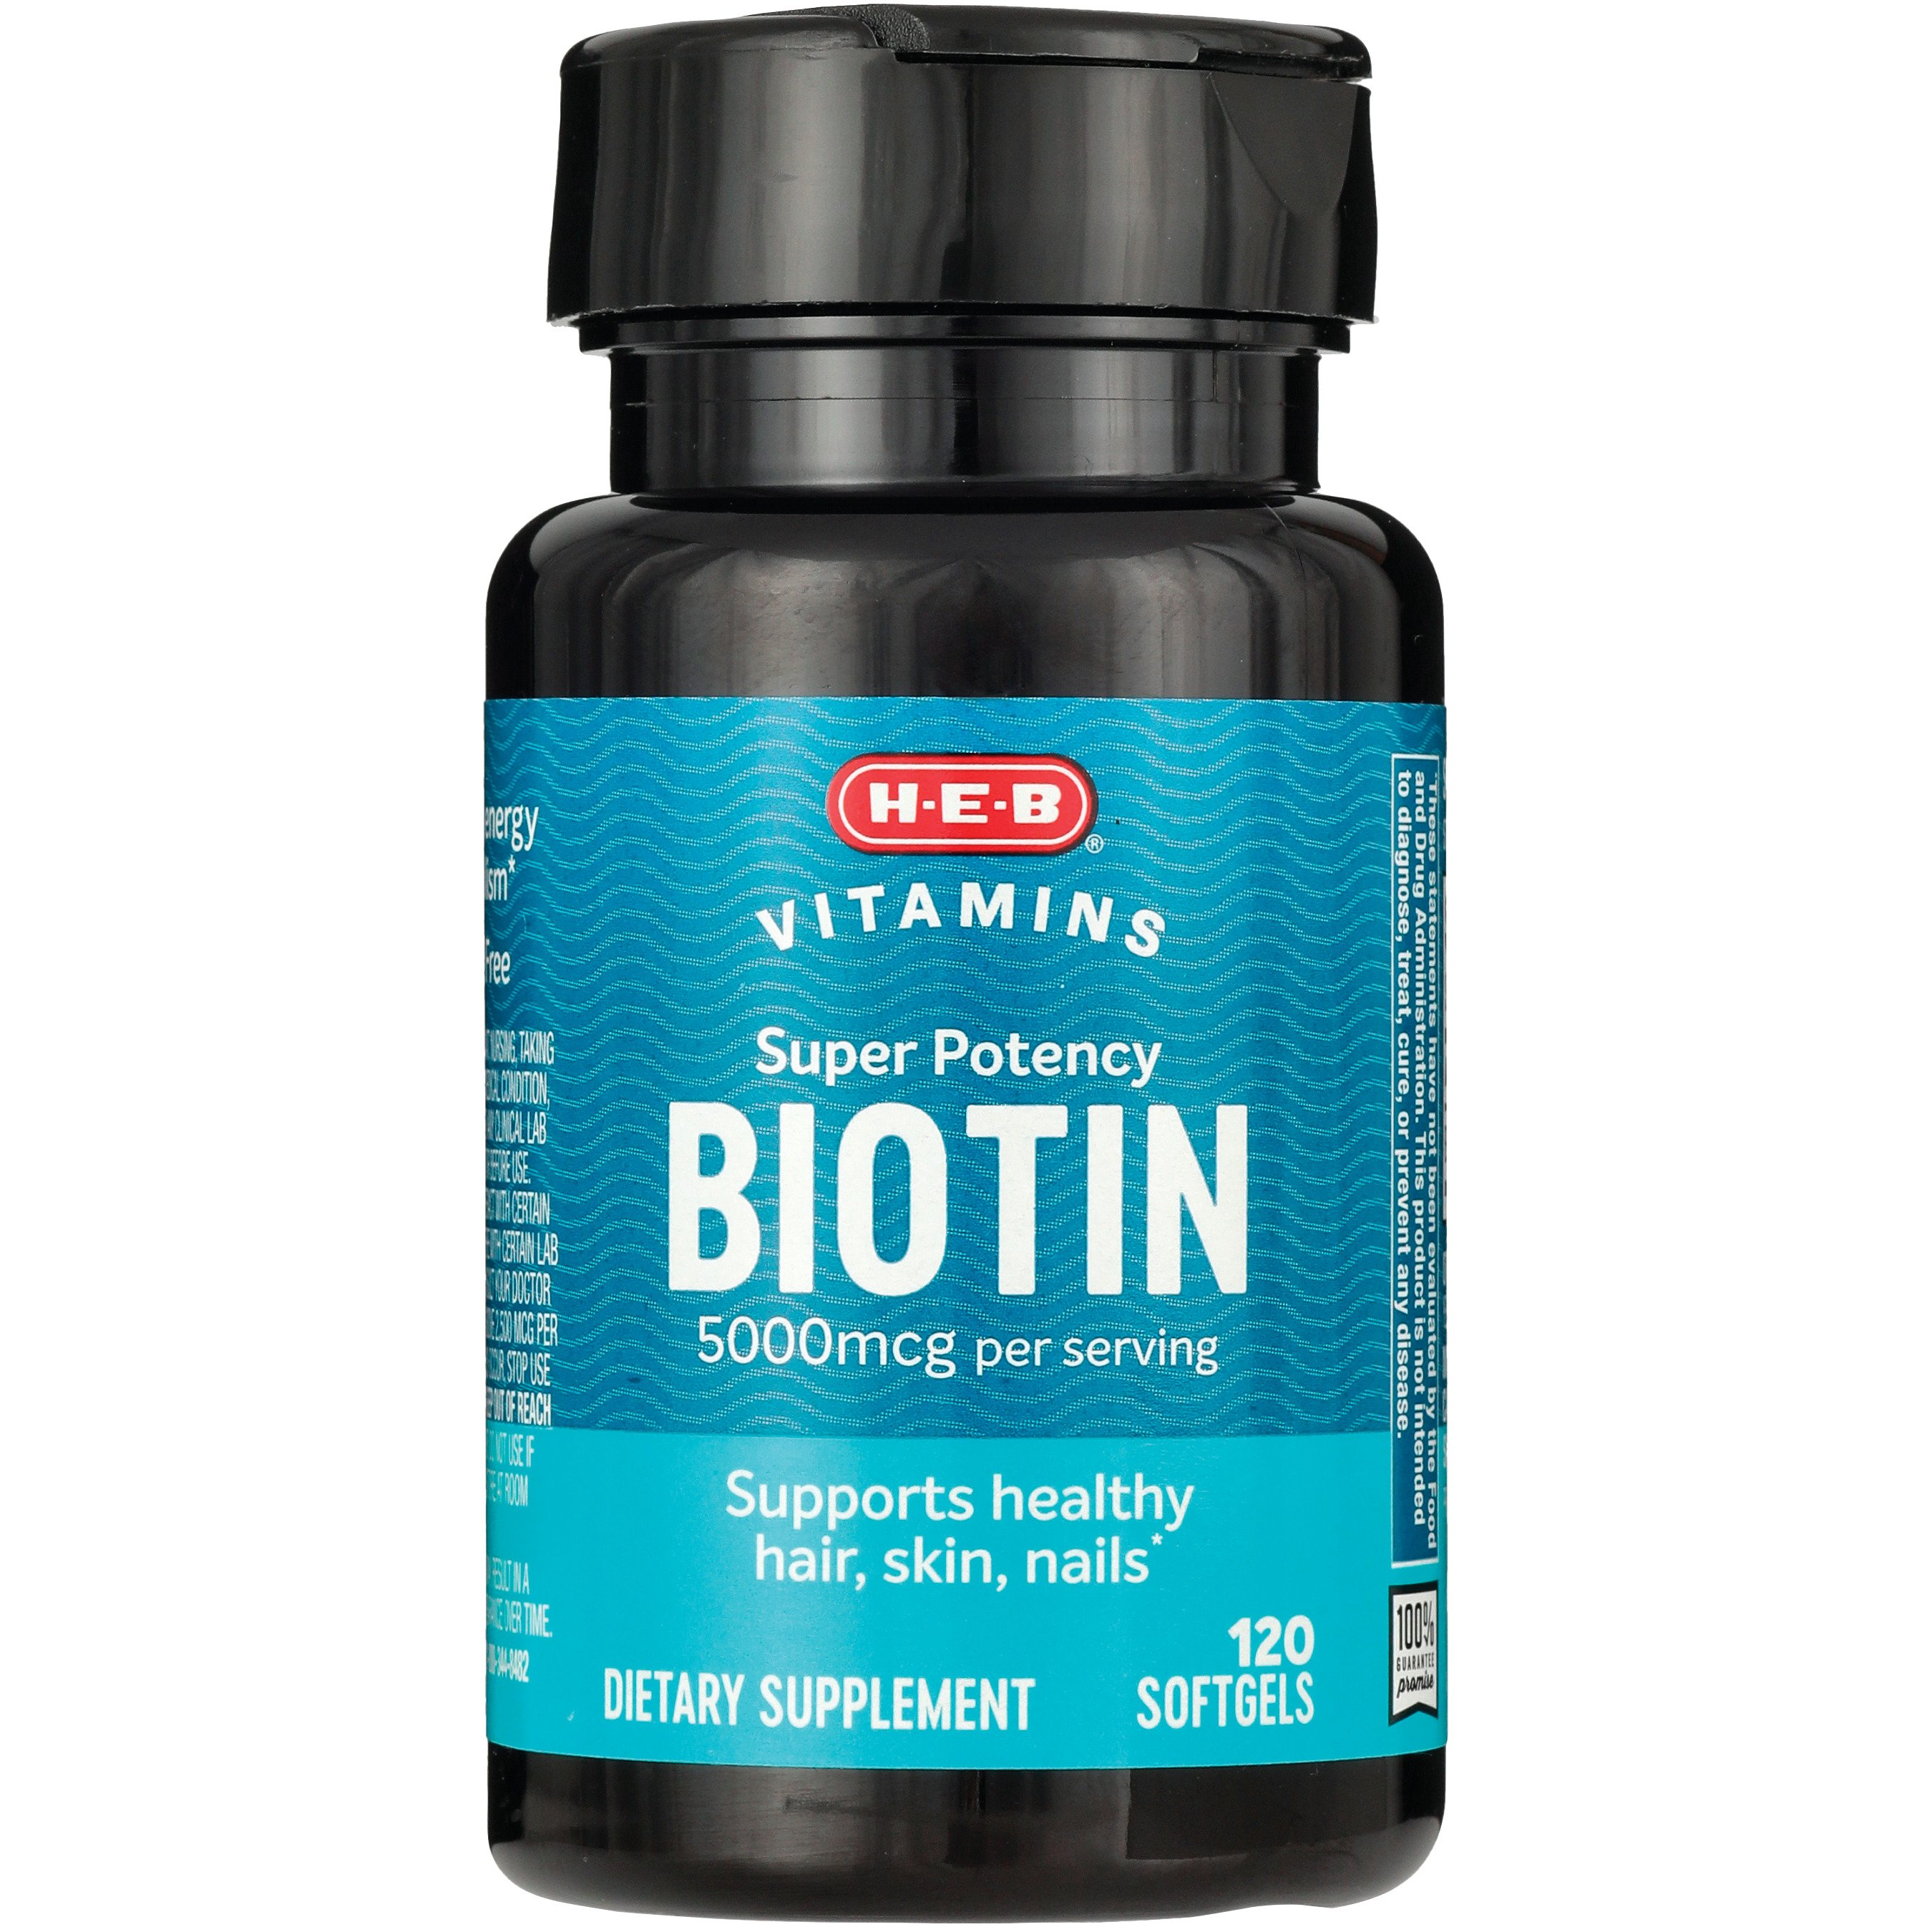 HEB Vitamins Super Potency Biotin Softgels - 5,000 mcg - Shop Vitamins A-Z  at H-E-B